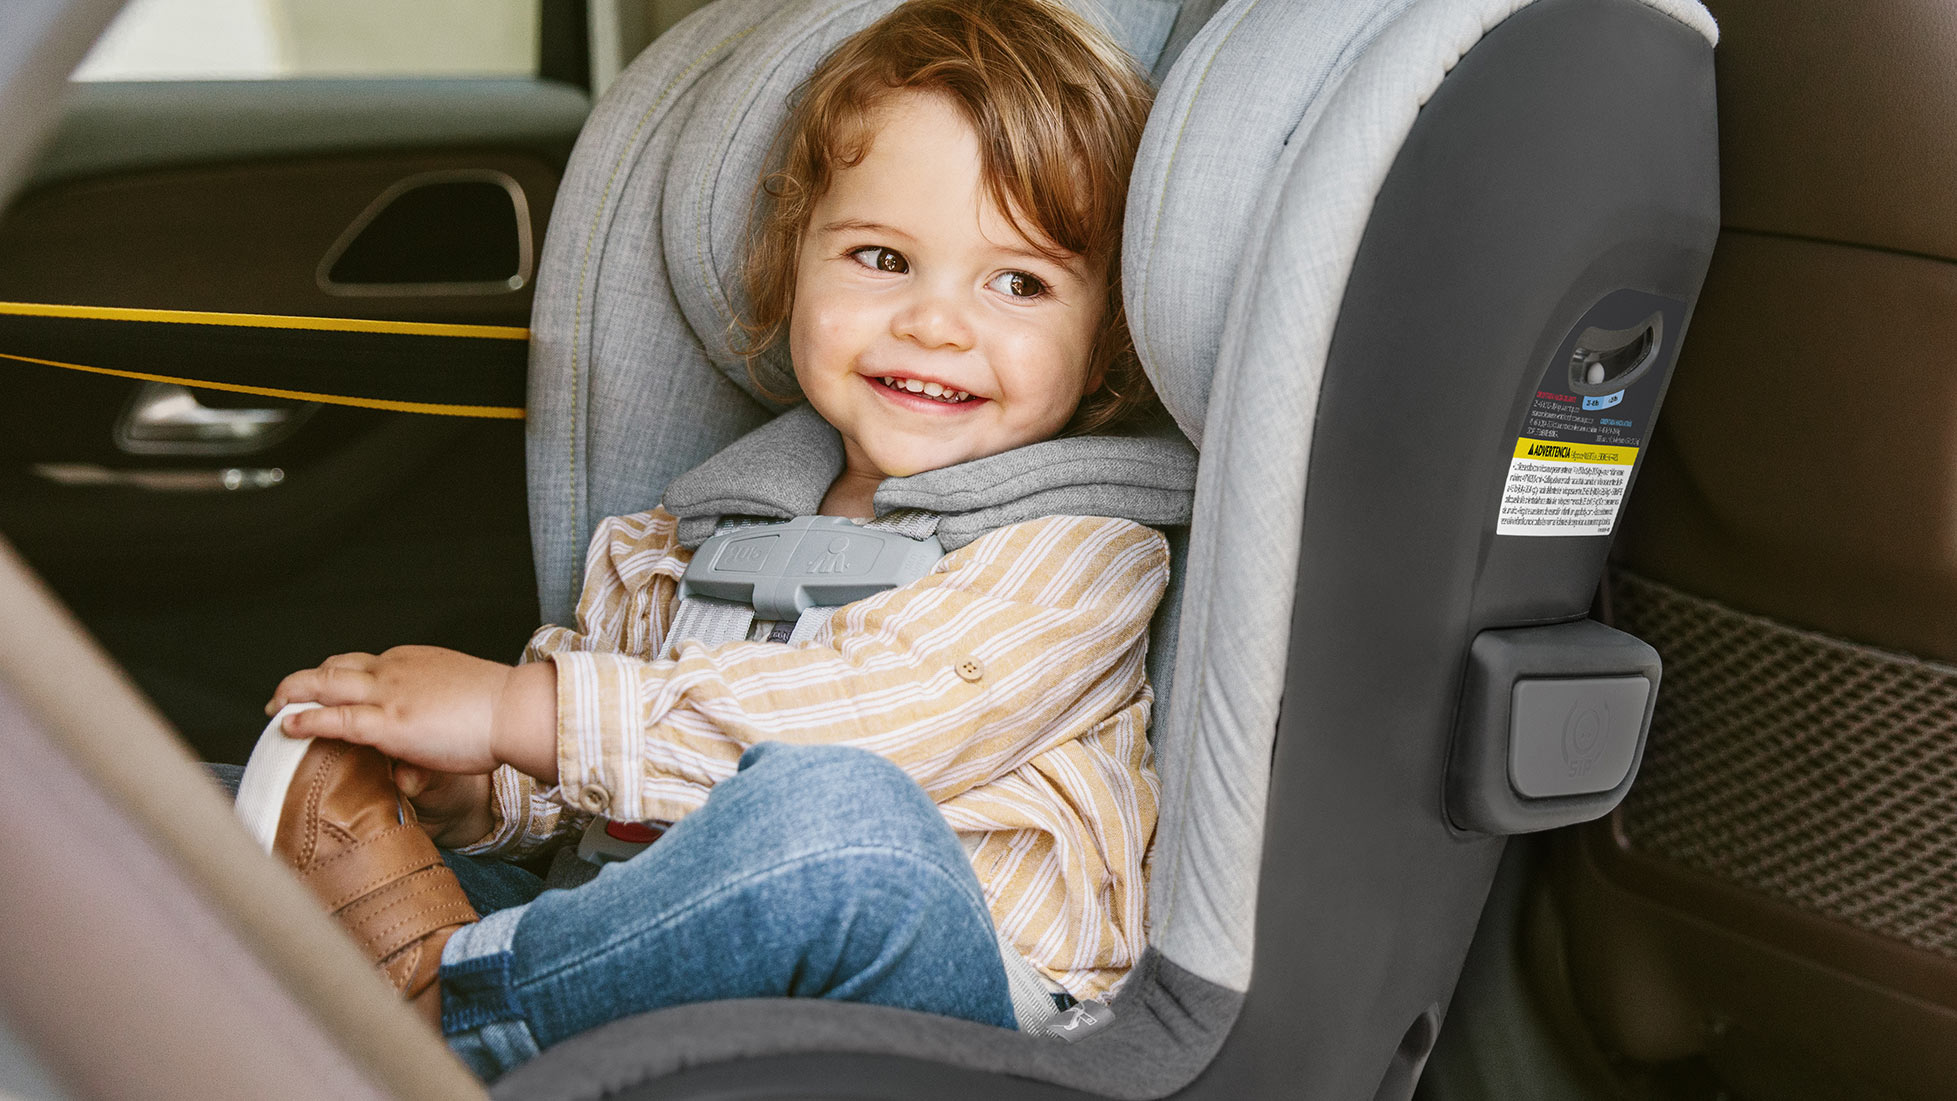 Accesorios para carros y sillas - Tiendas Babys